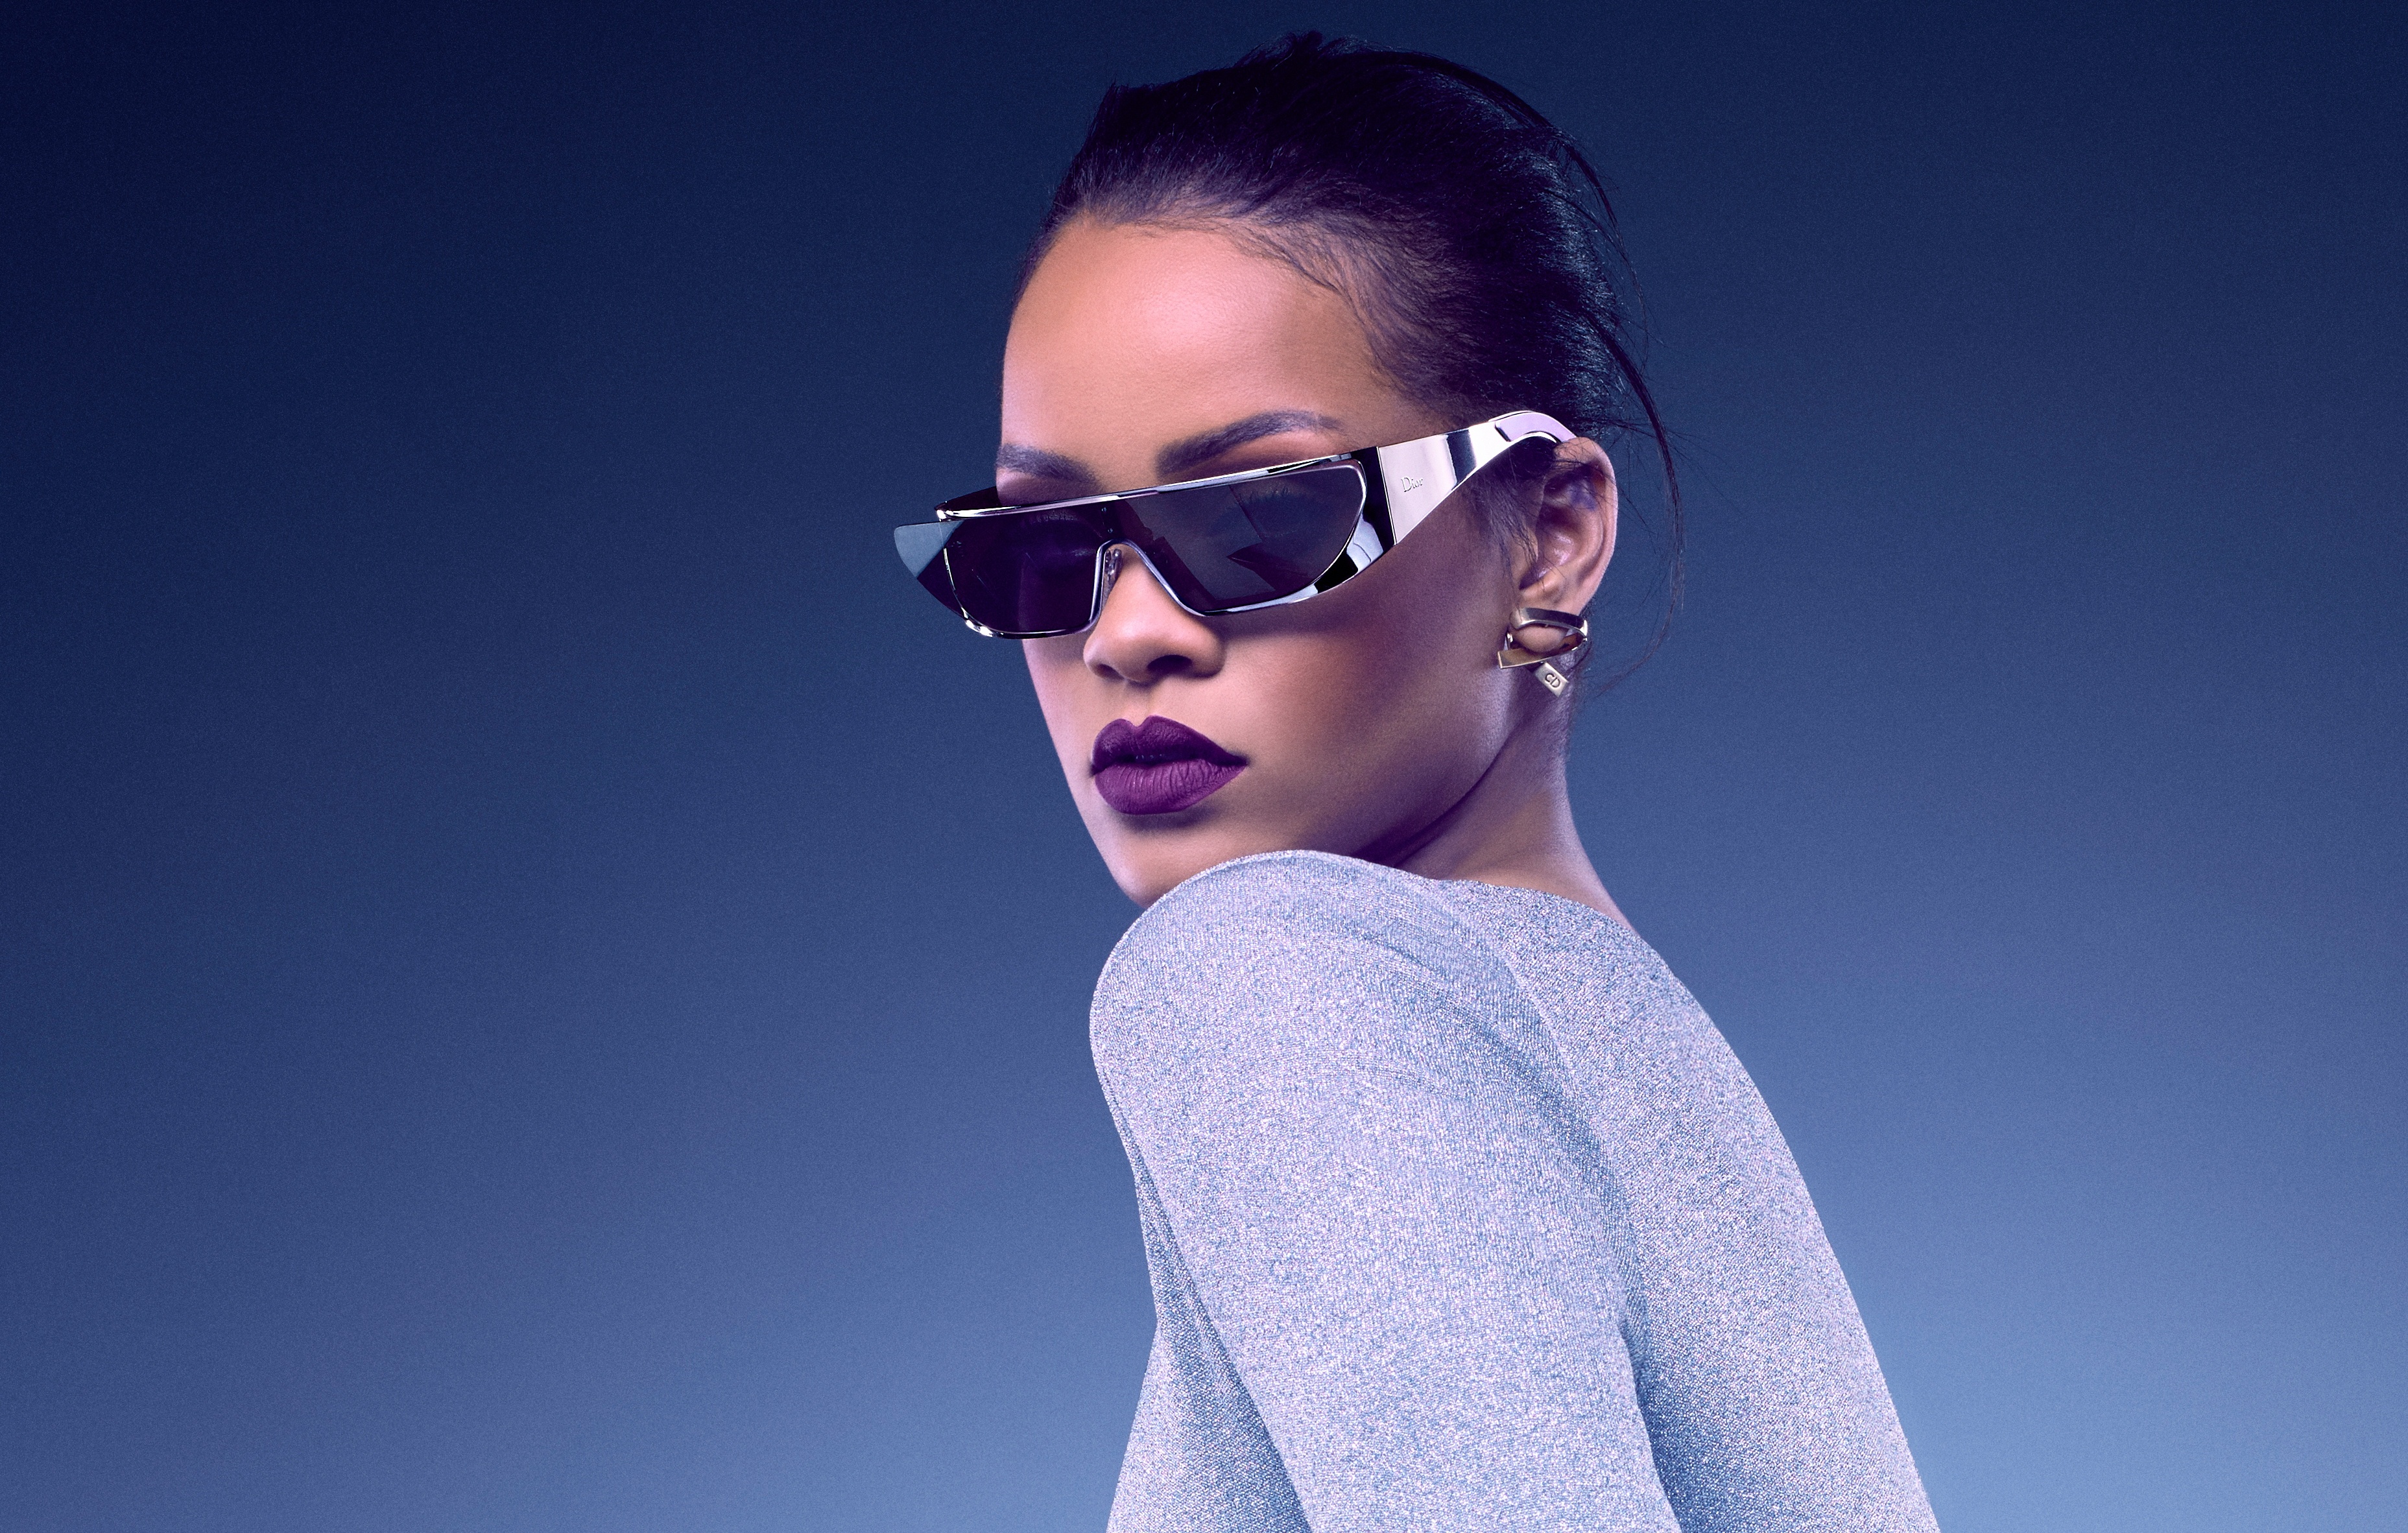 Download mobile wallpaper Music, Rihanna, Singer, Brunette, Sunglasses, Lipstick, Barbadian for free.